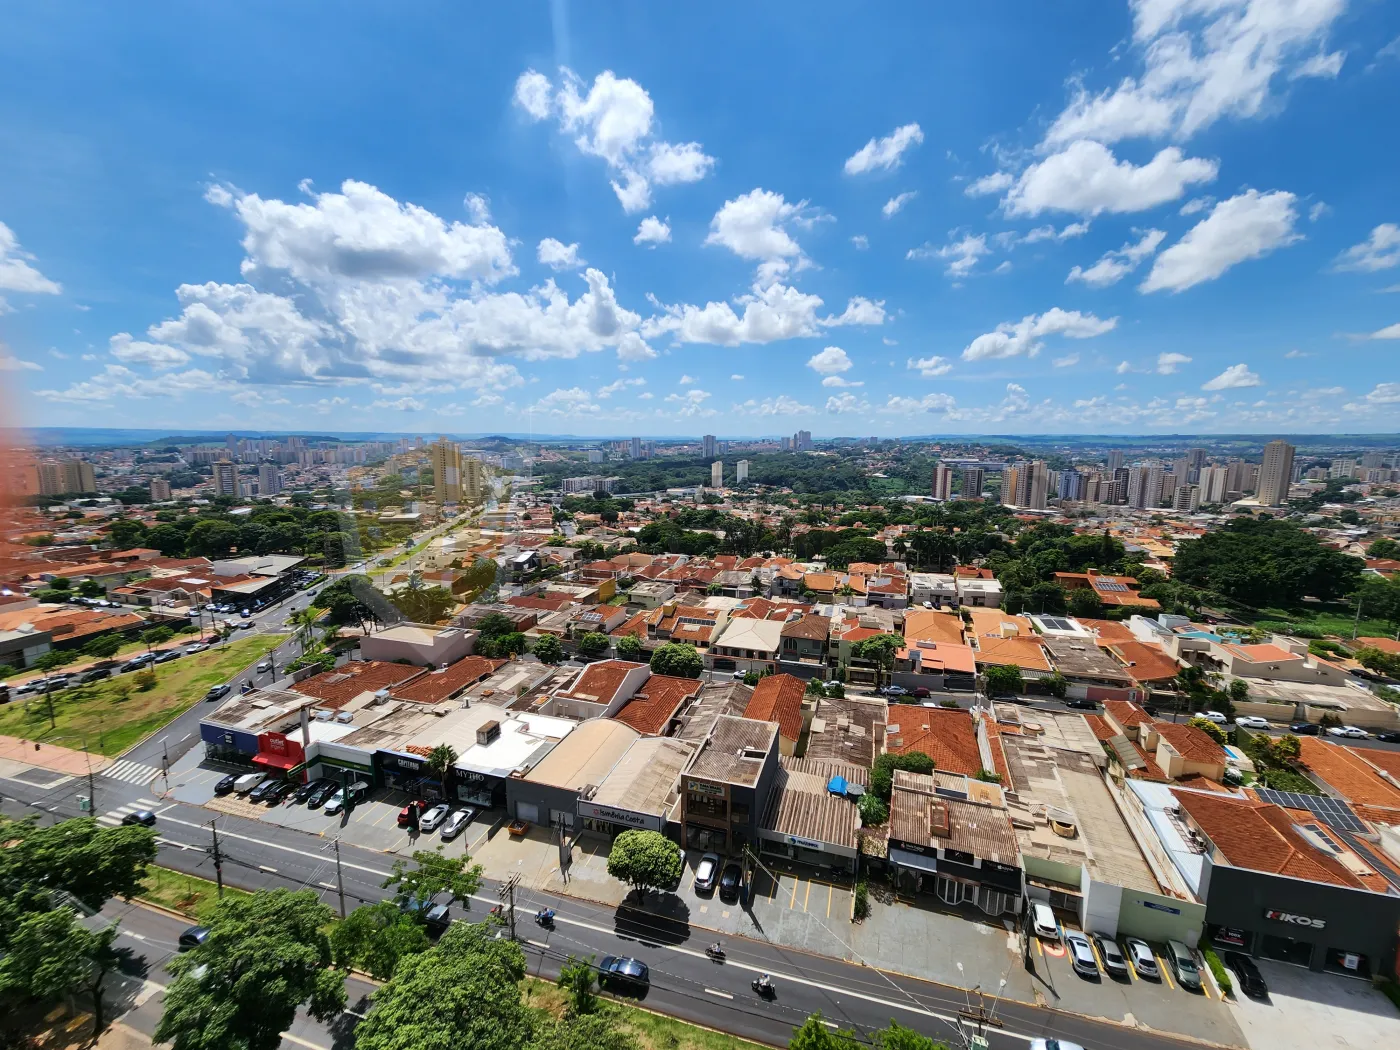 Alugar Apartamento / Padrão em Ribeirão Preto R$ 2.700,00 - Foto 15